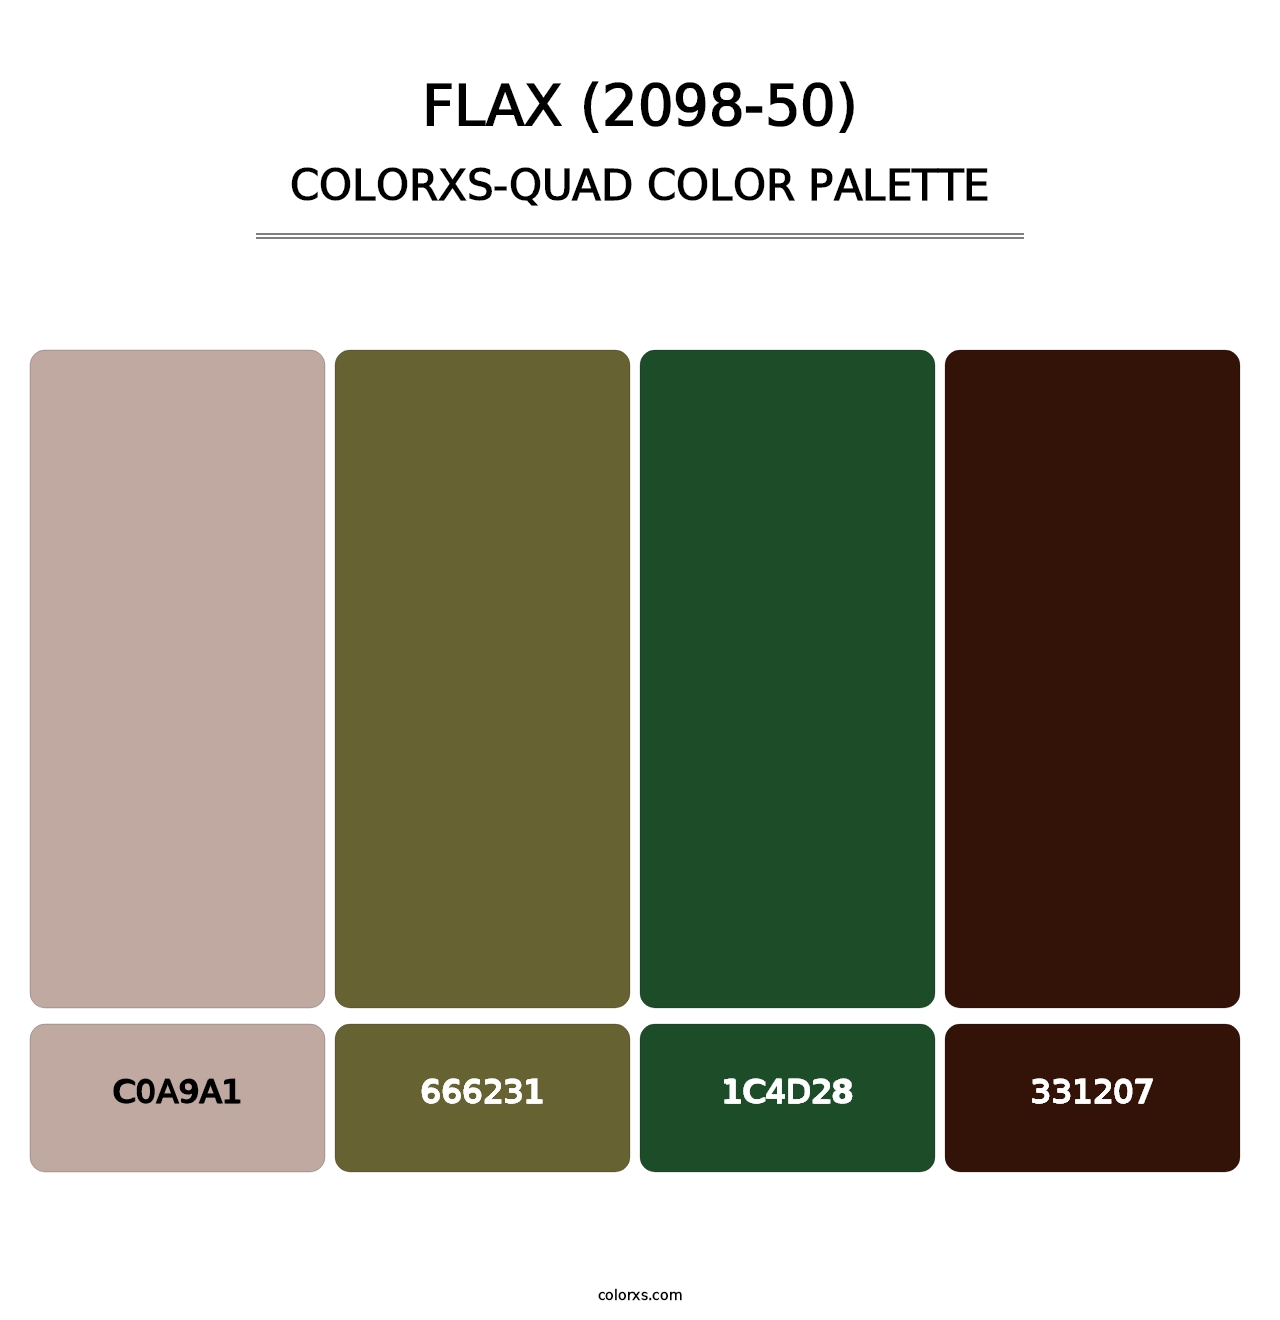 Flax (2098-50) - Colorxs Quad Palette